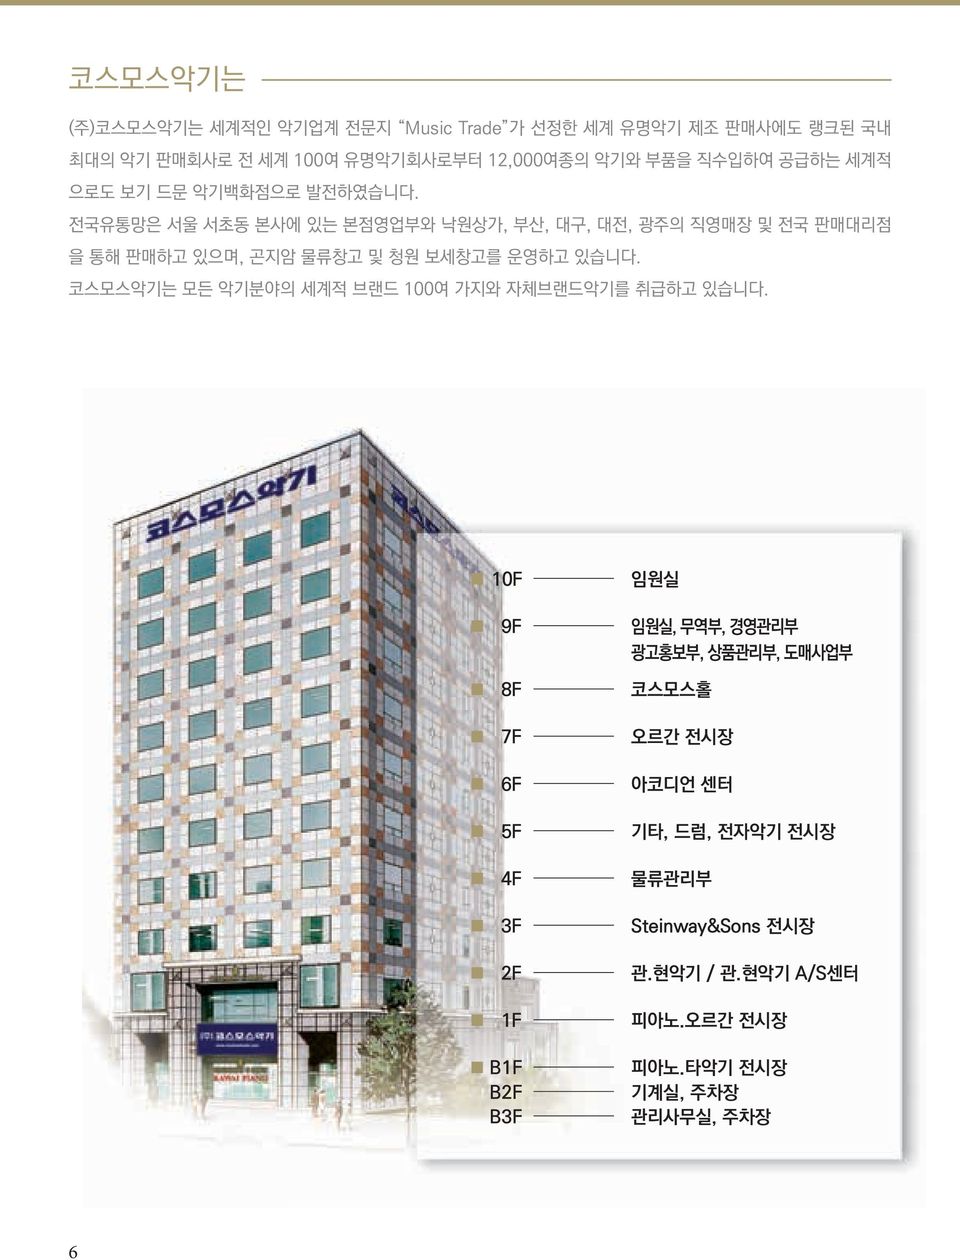 전국유통망은 서울 서초동 본사에 있는 본점영업부와 낙원상가, 부산, 대구, 대전, 광주의 직영매장 및 전국 판매대리점 을 통해 판매하고 있으며, 곤지암 물류창고 및 청원 보세창고를 운영하고 있습니다.